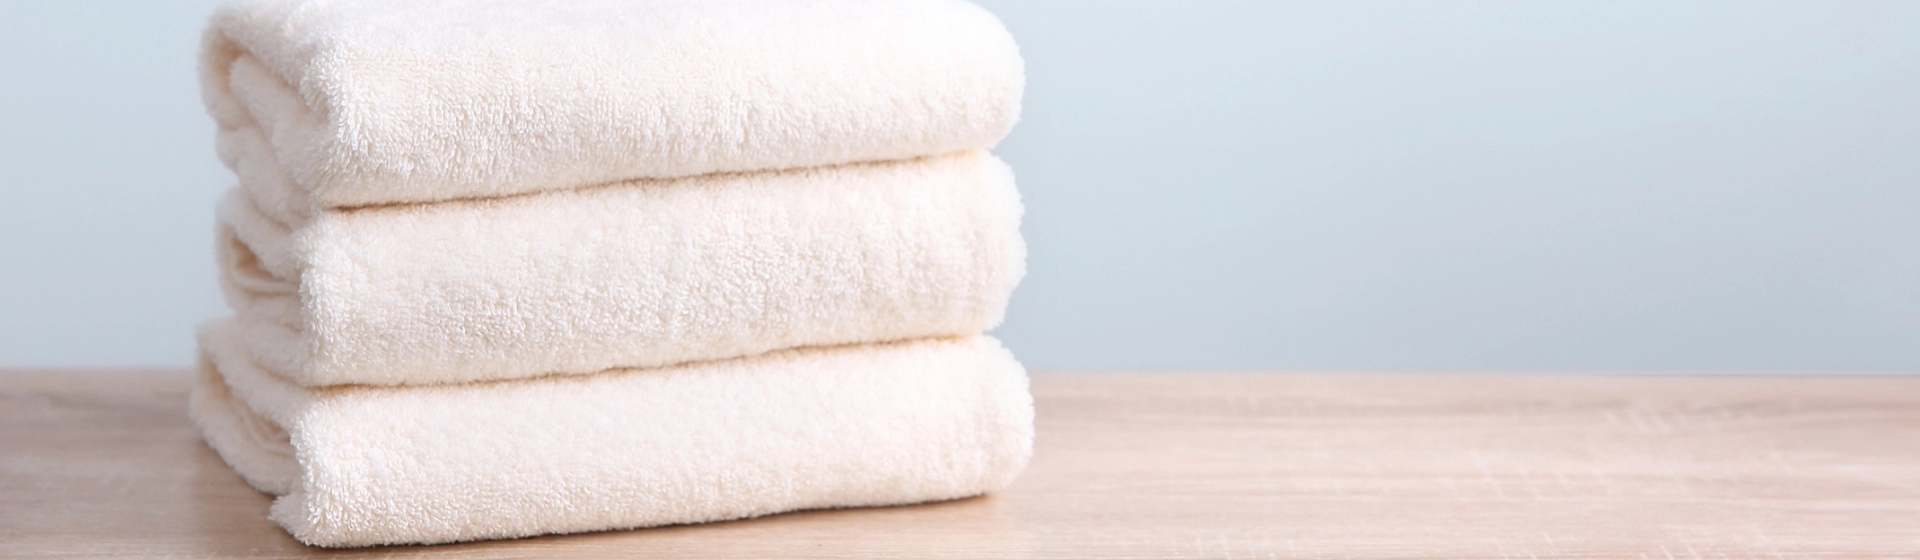 trzy złożone ręczniki